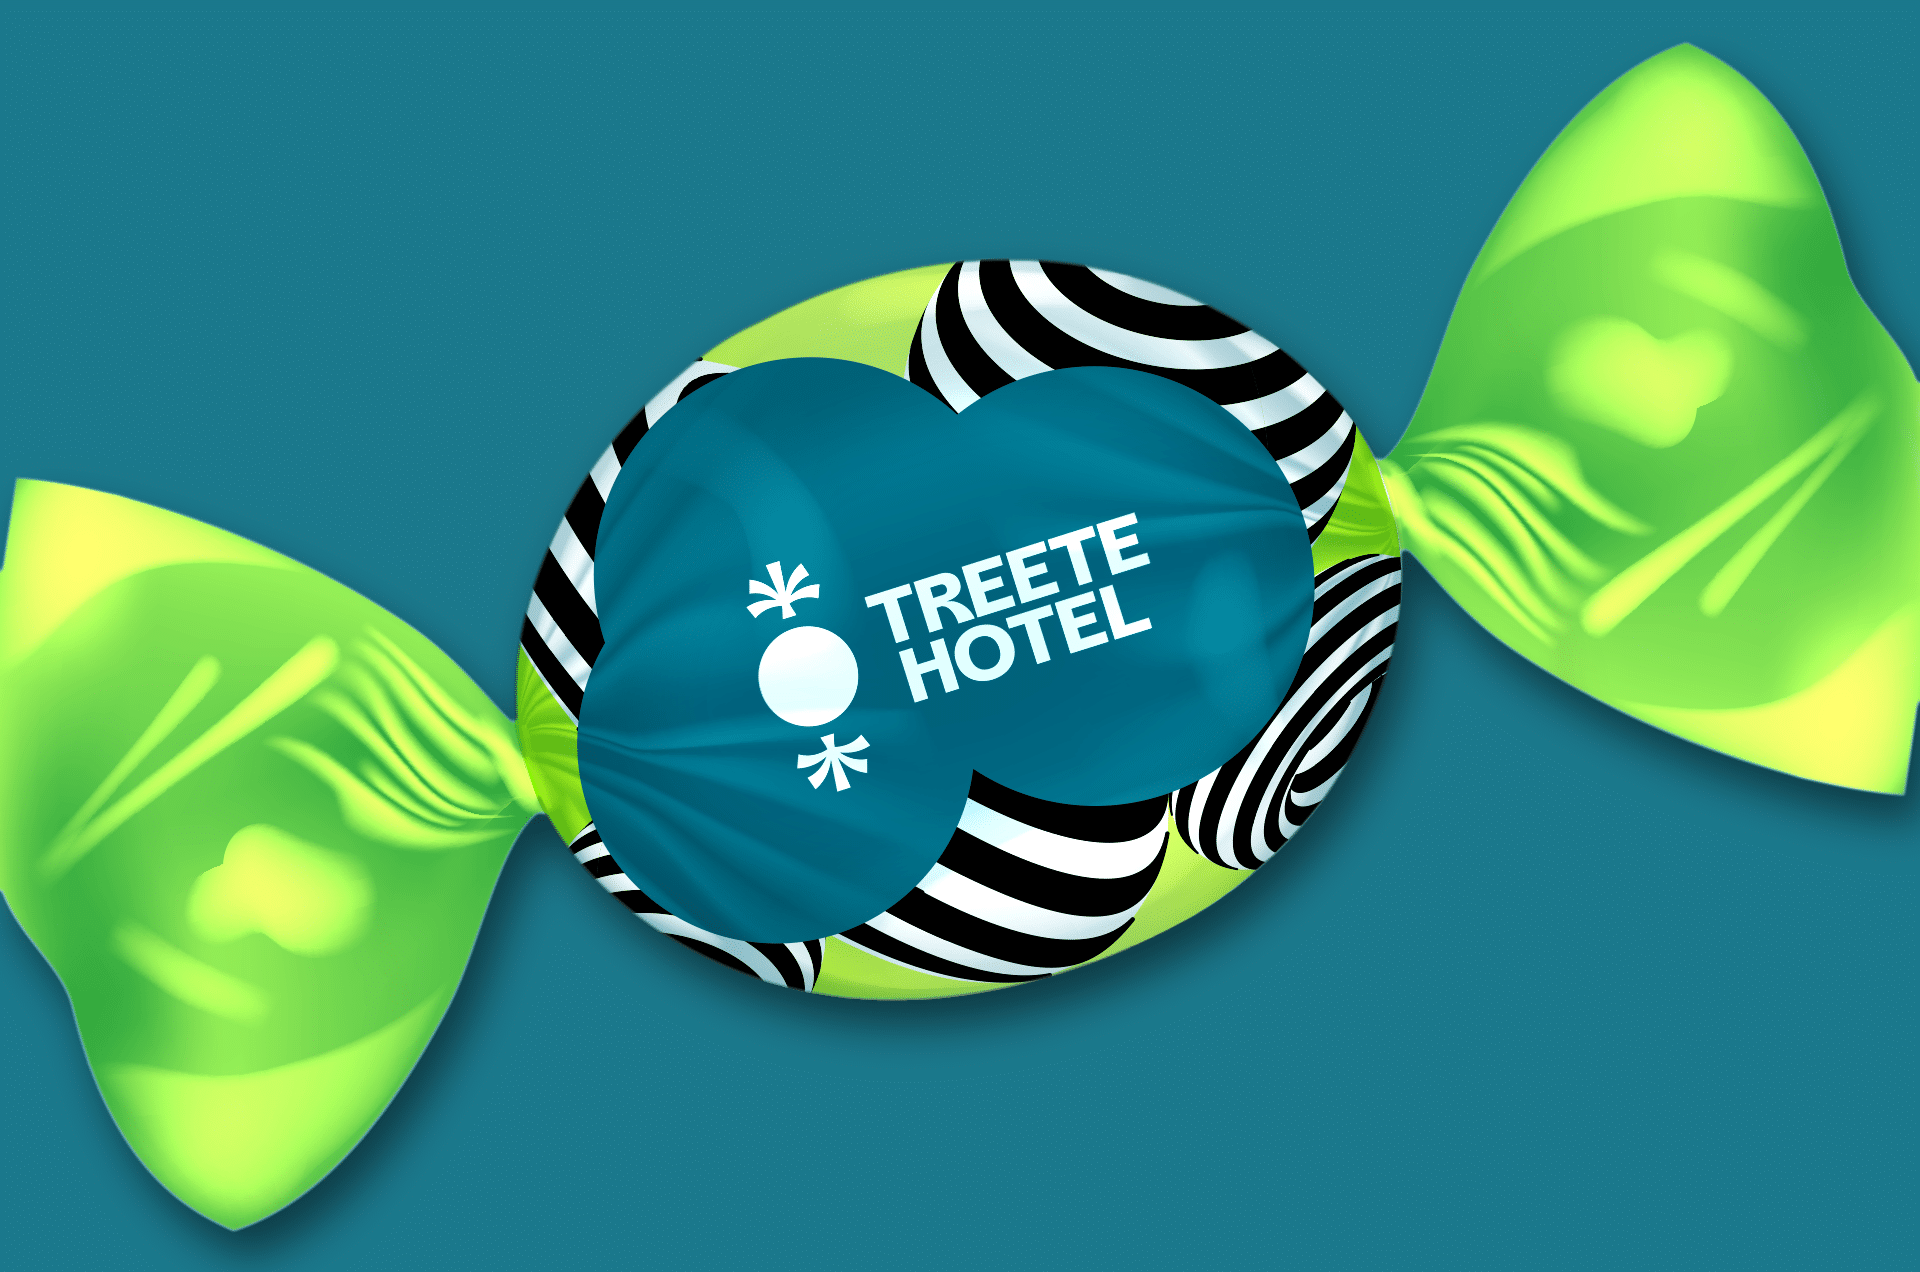 treete-branding-stationary-businesscard-sweet-full-logo